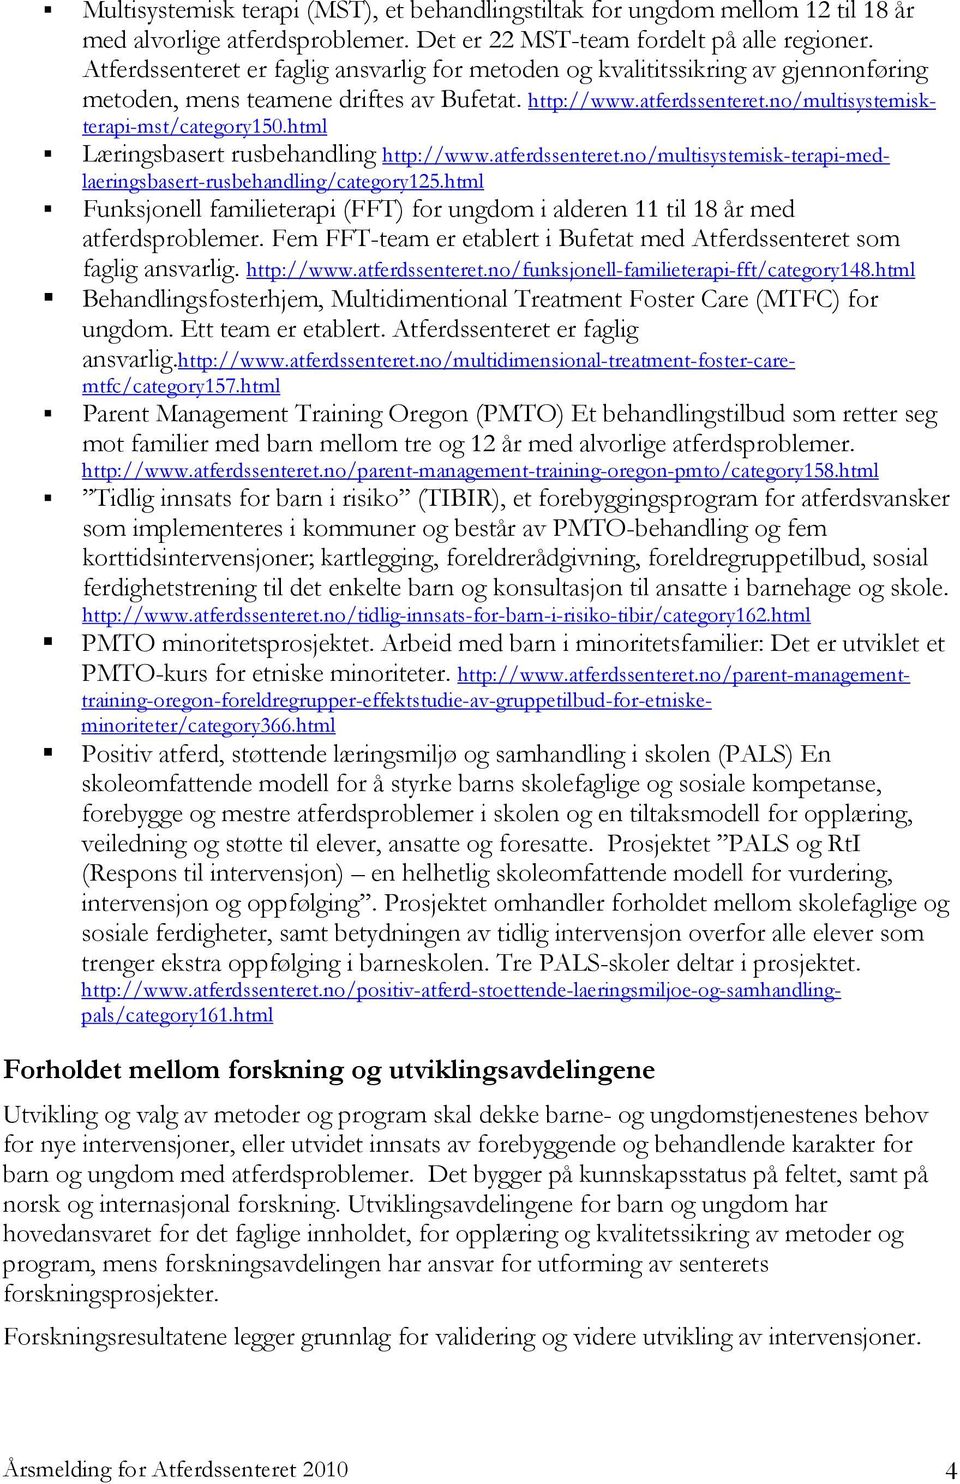 html Læringsbasert rusbehandling http://www.atferdssenteret.no/multisystemisk-terapi-medlaeringsbasert-rusbehandling/category125.